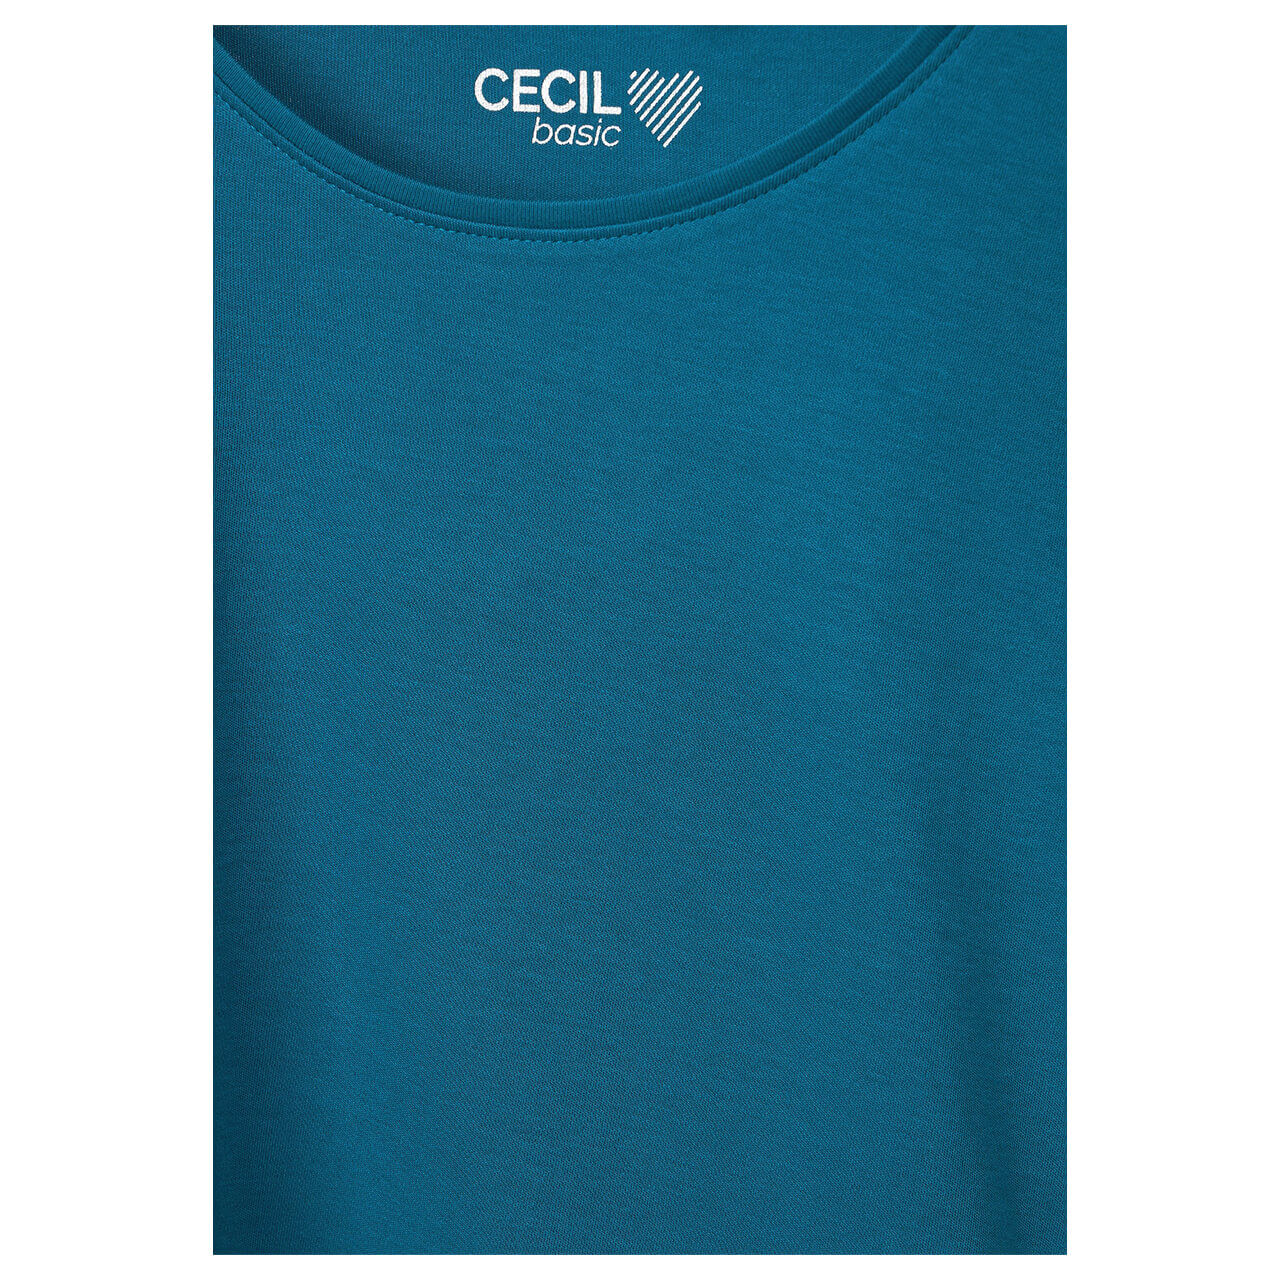 Cecil Lena T-Shirt teal blue